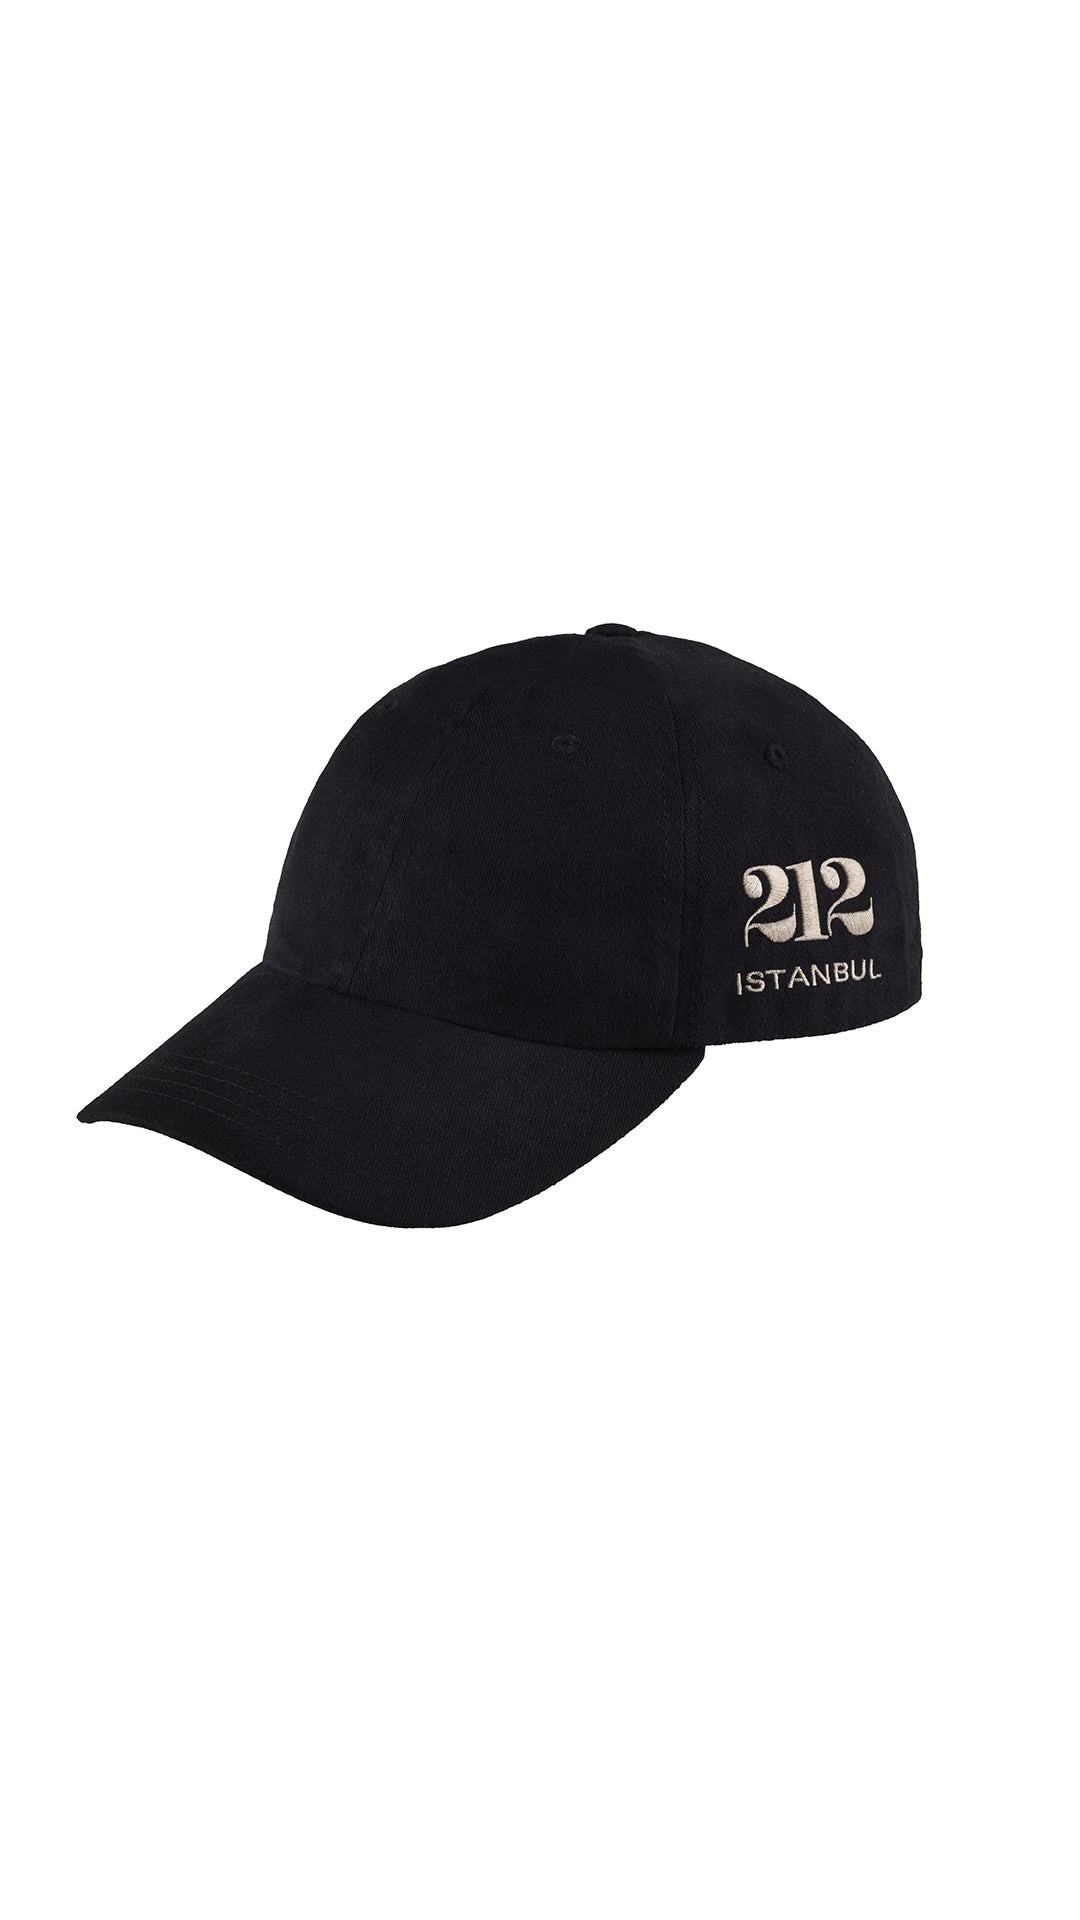 212 HAT